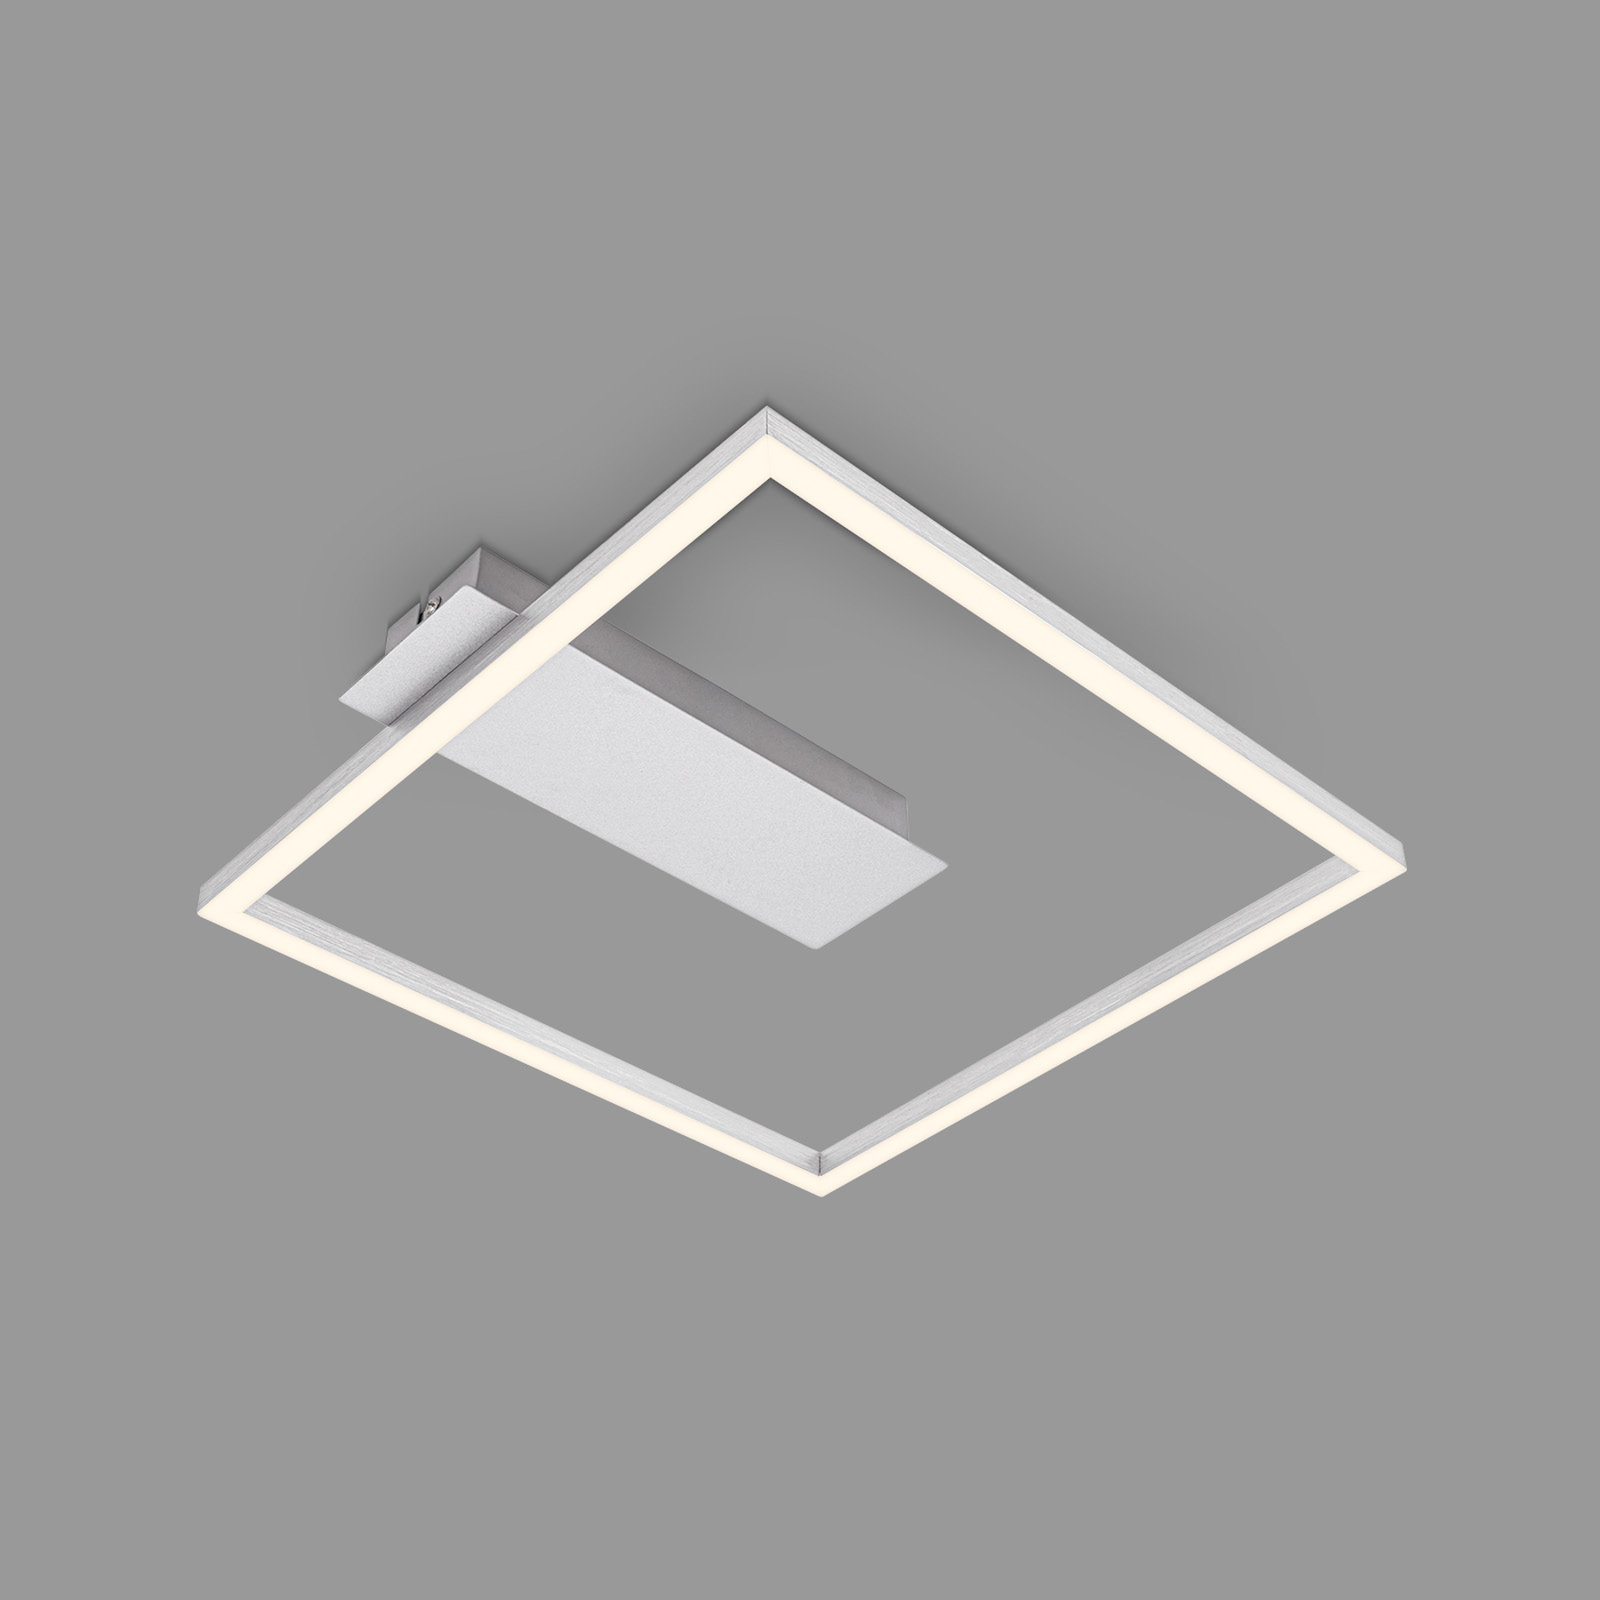 LED stropní světlo 3771 ve tvaru rámu, hliník